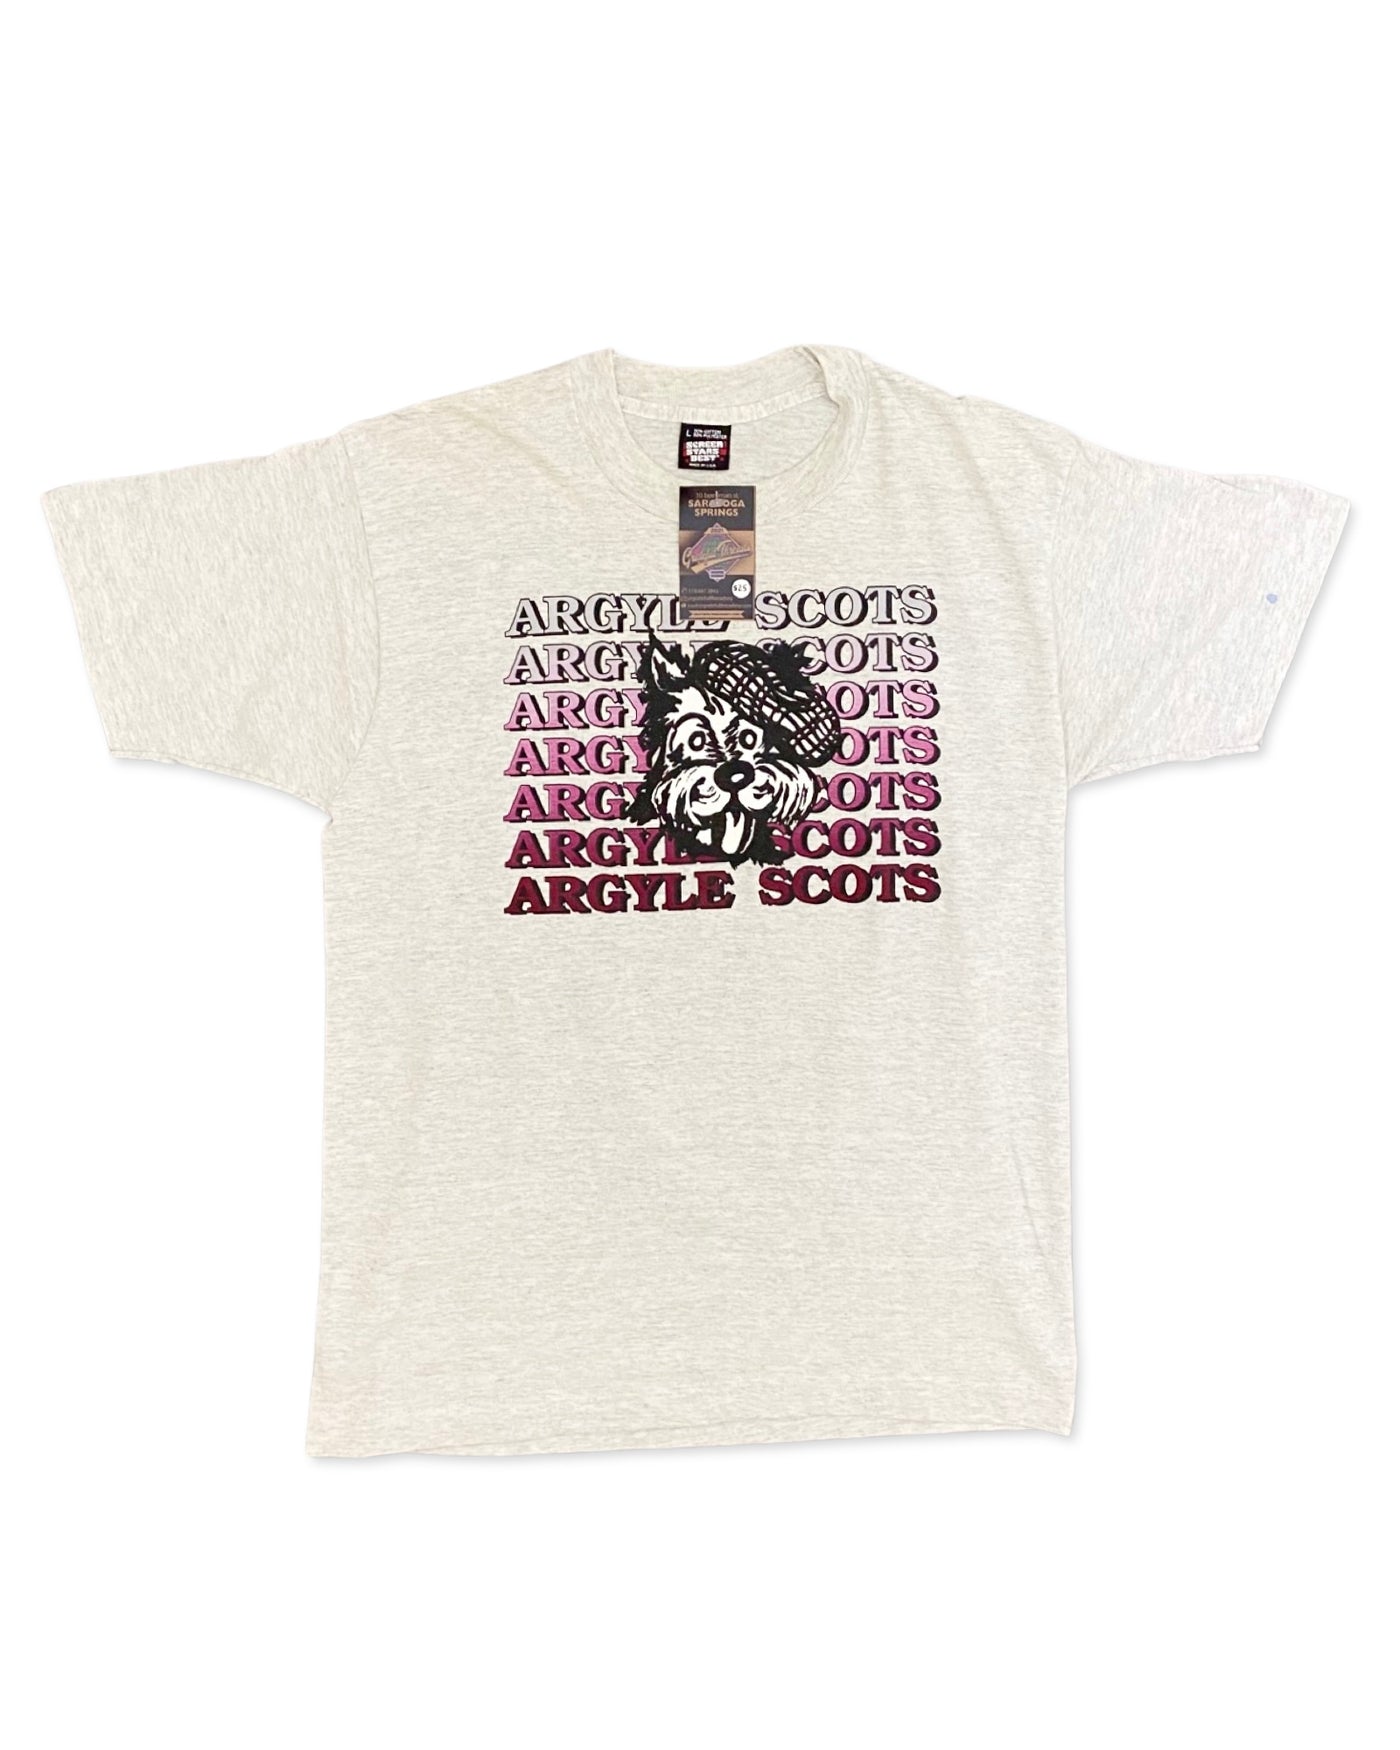 Vintage 1991 Argyle Scots T-Shirt